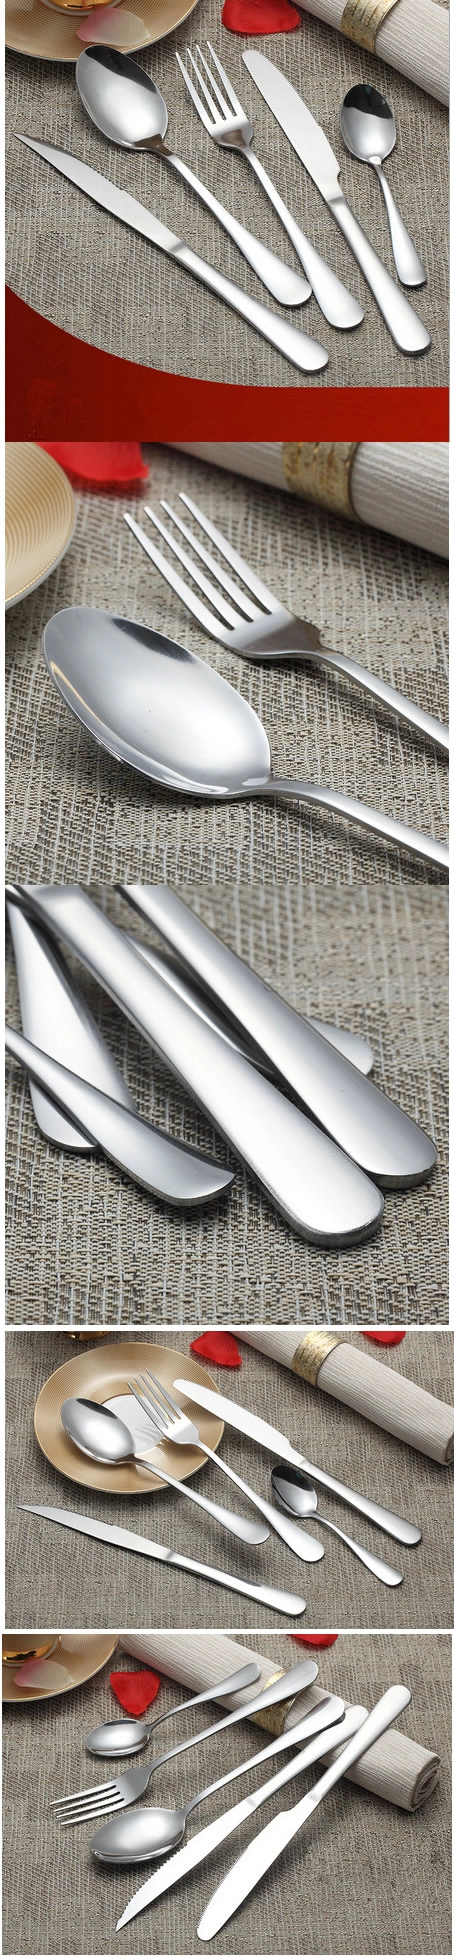 Stainless Steel dinnerware